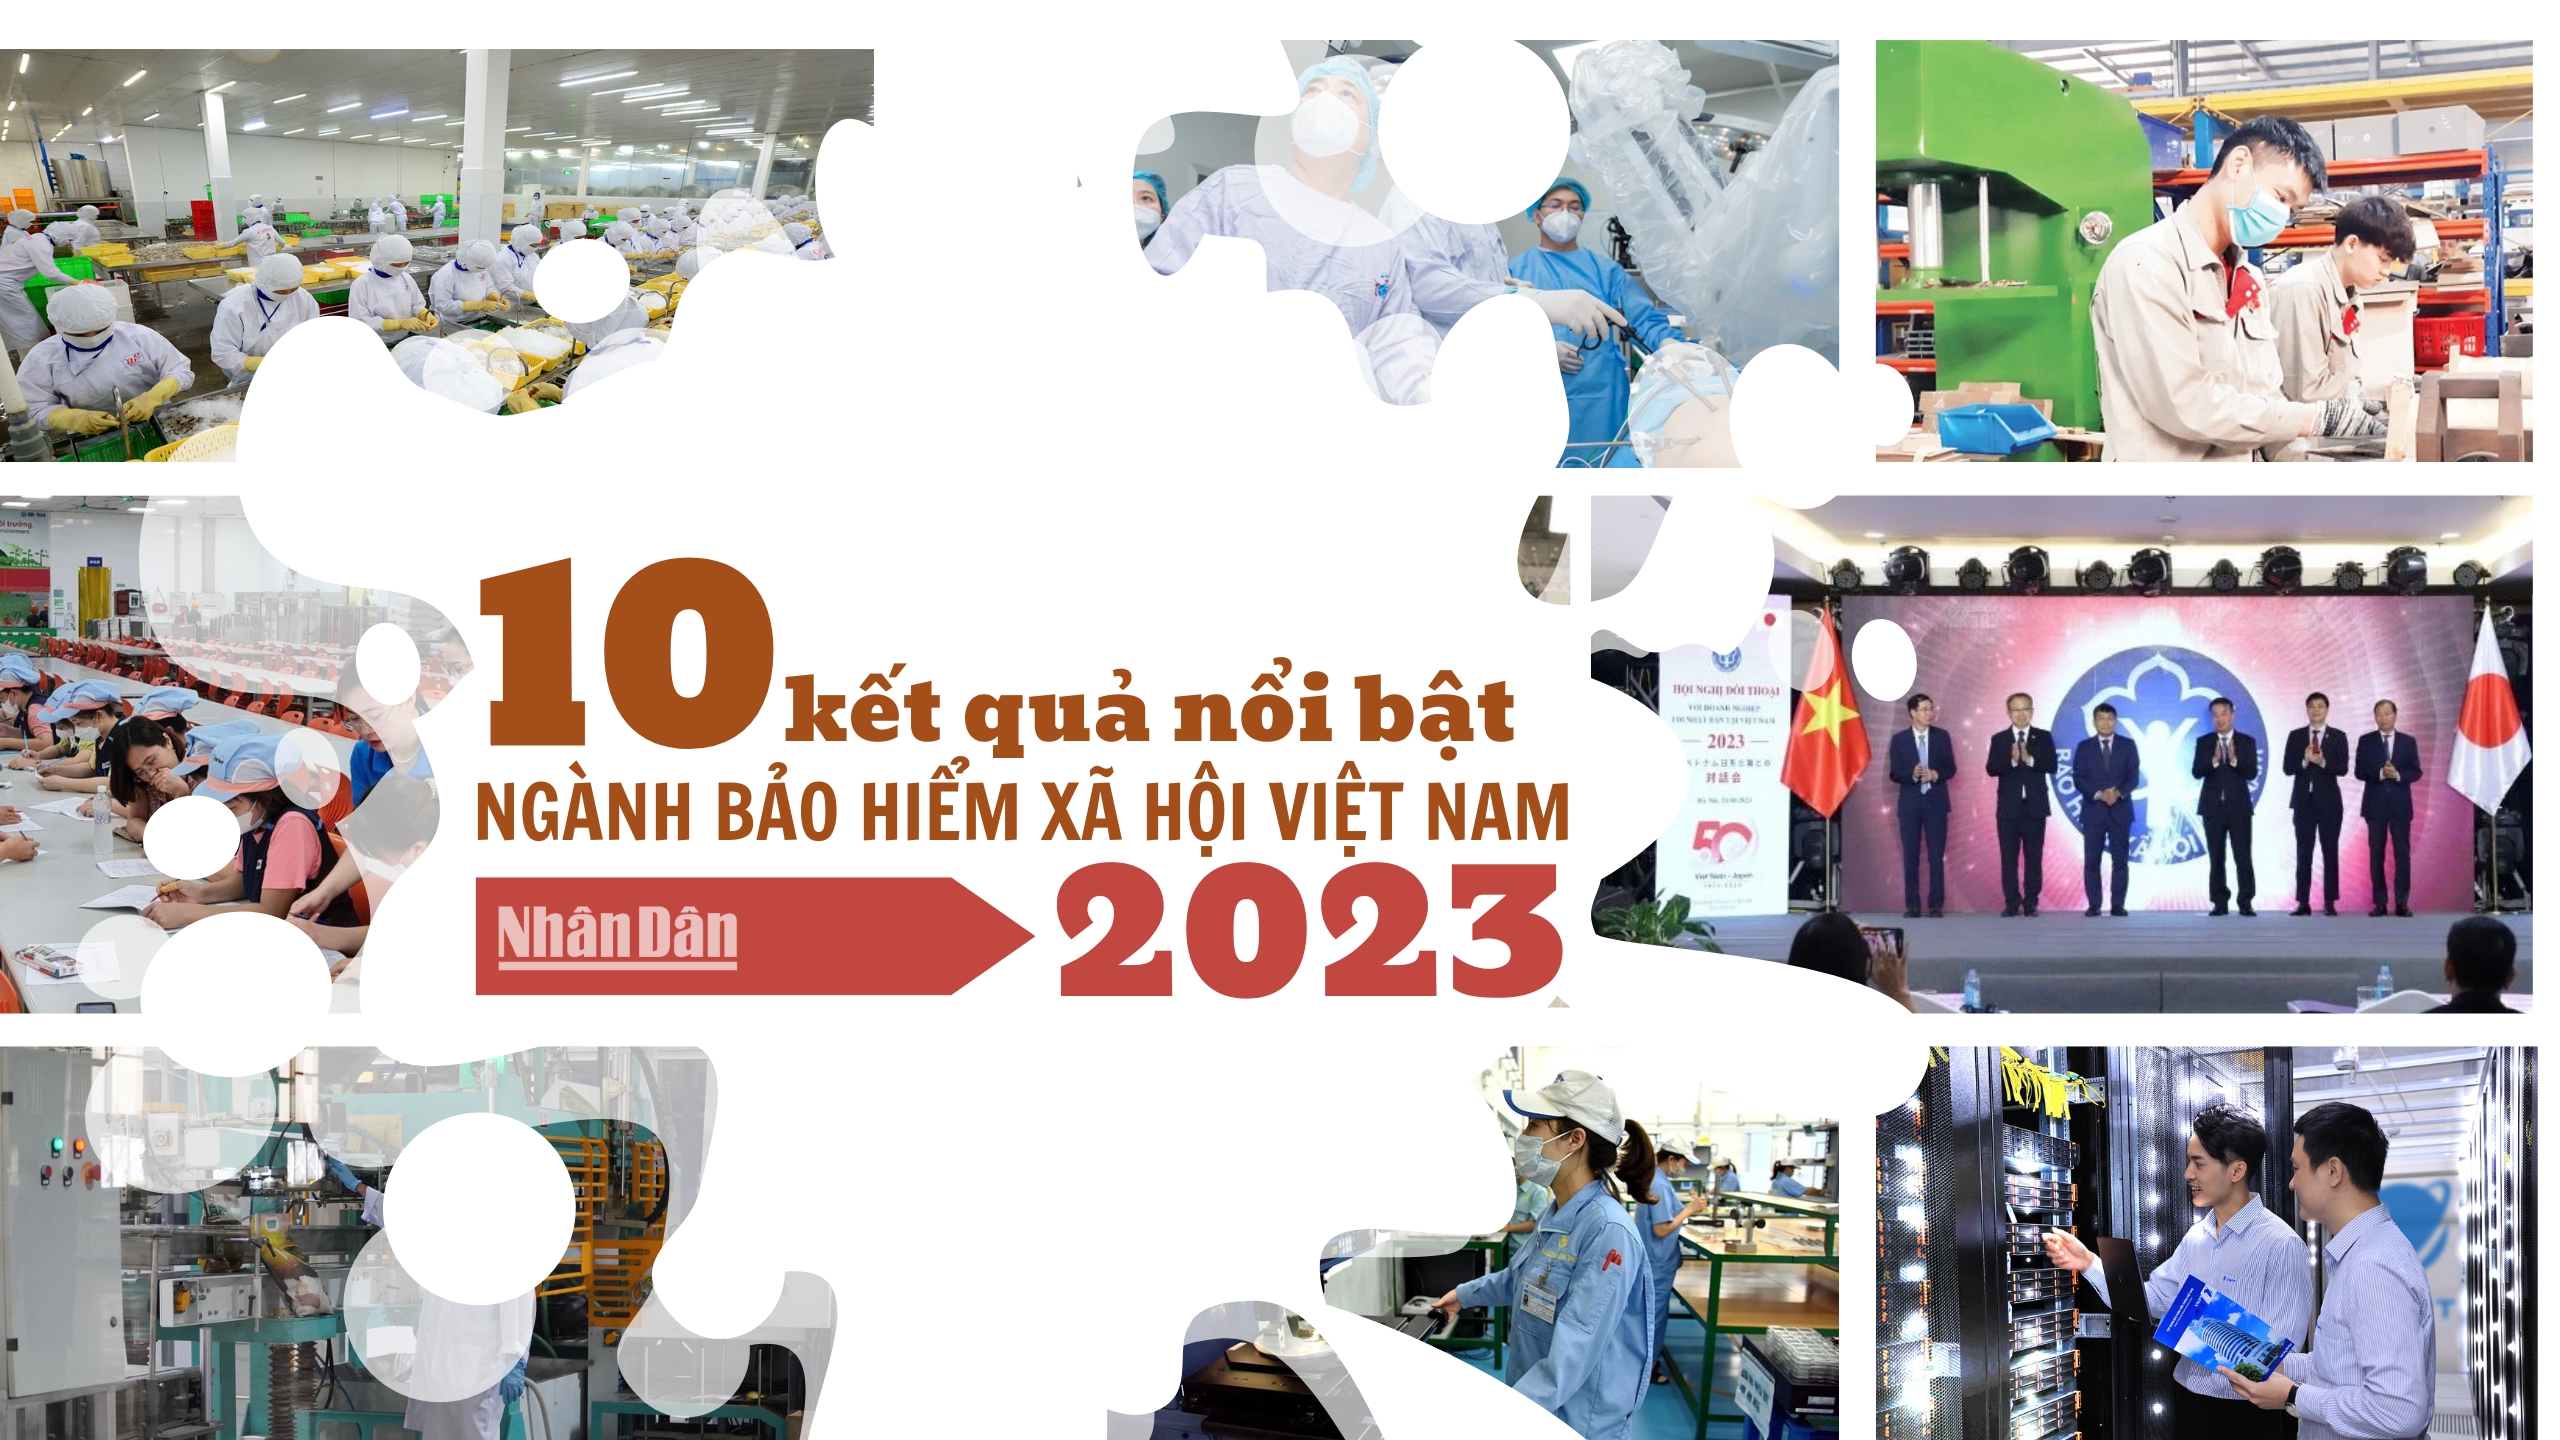 10 kết quả nổi bật của ngành bảo hiểm xã hội Việt Nam năm 2023